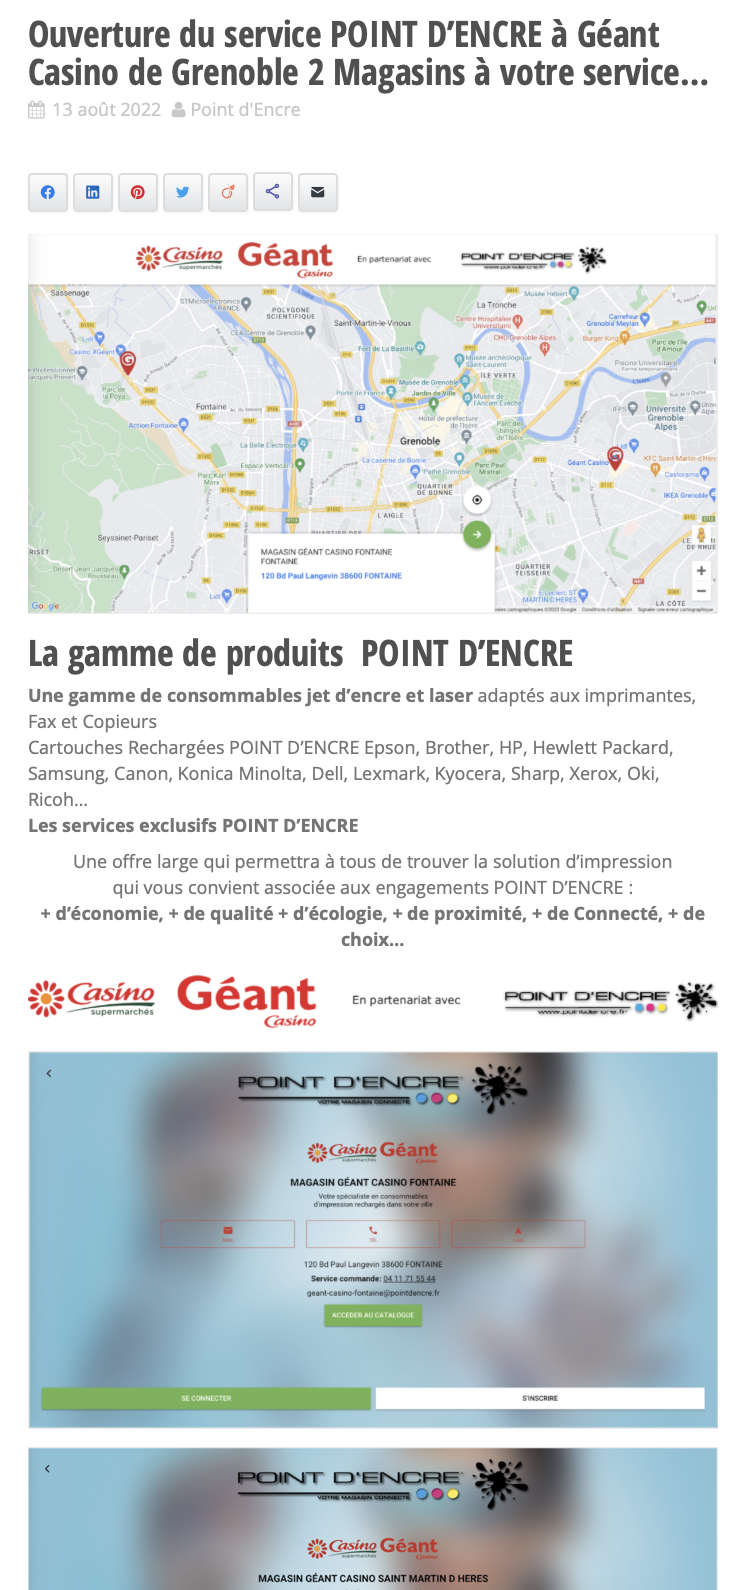 Ouverture du service POINT D’ENCRE à Géant Casino de Grenoble 2 Magasins à votre service...